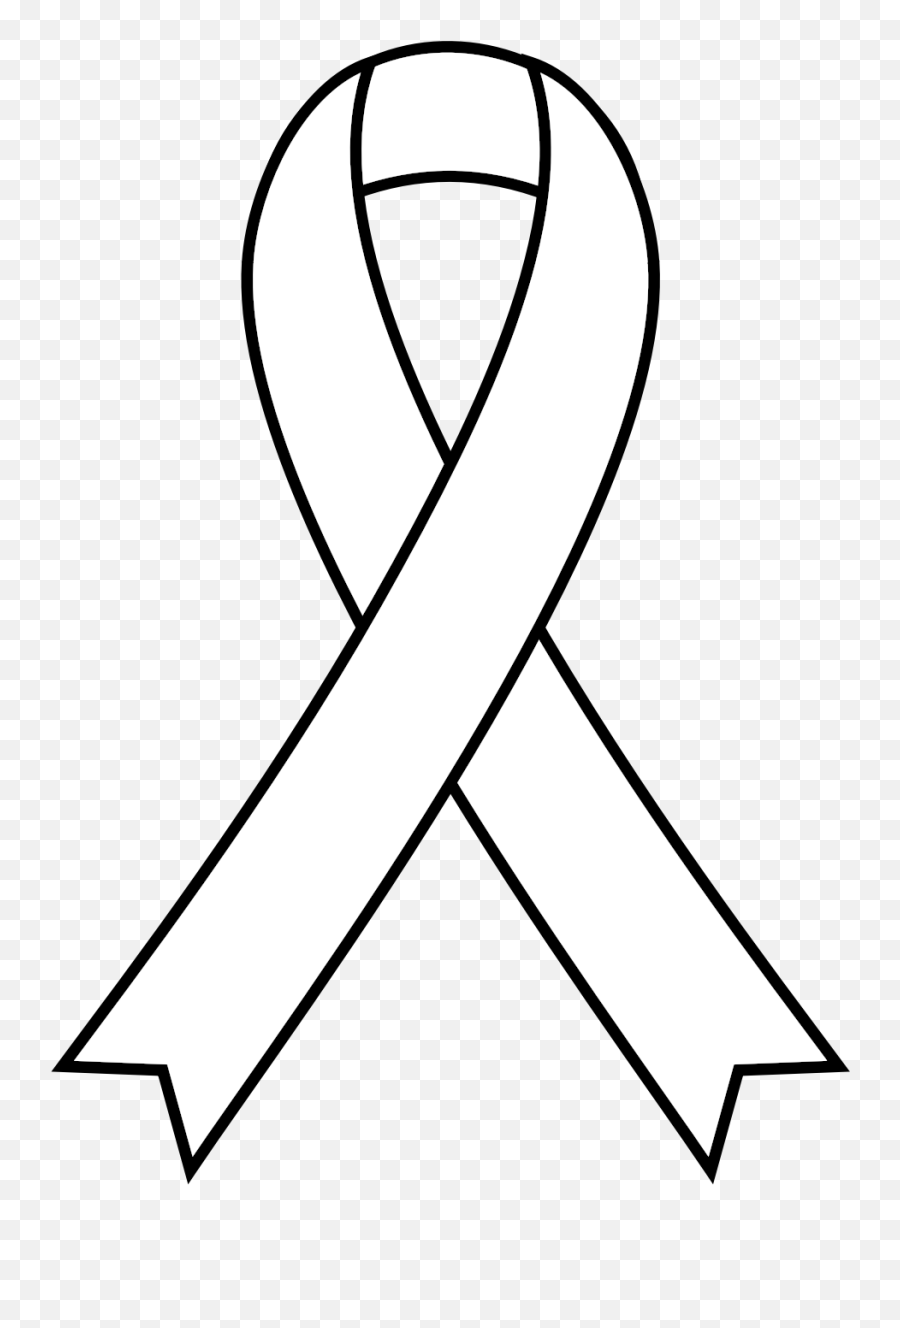 Cancer Awareness Ribbon Clipart - Transparent Awareness Ribbon Emoji,Breast Cancer Awareness Emoticon